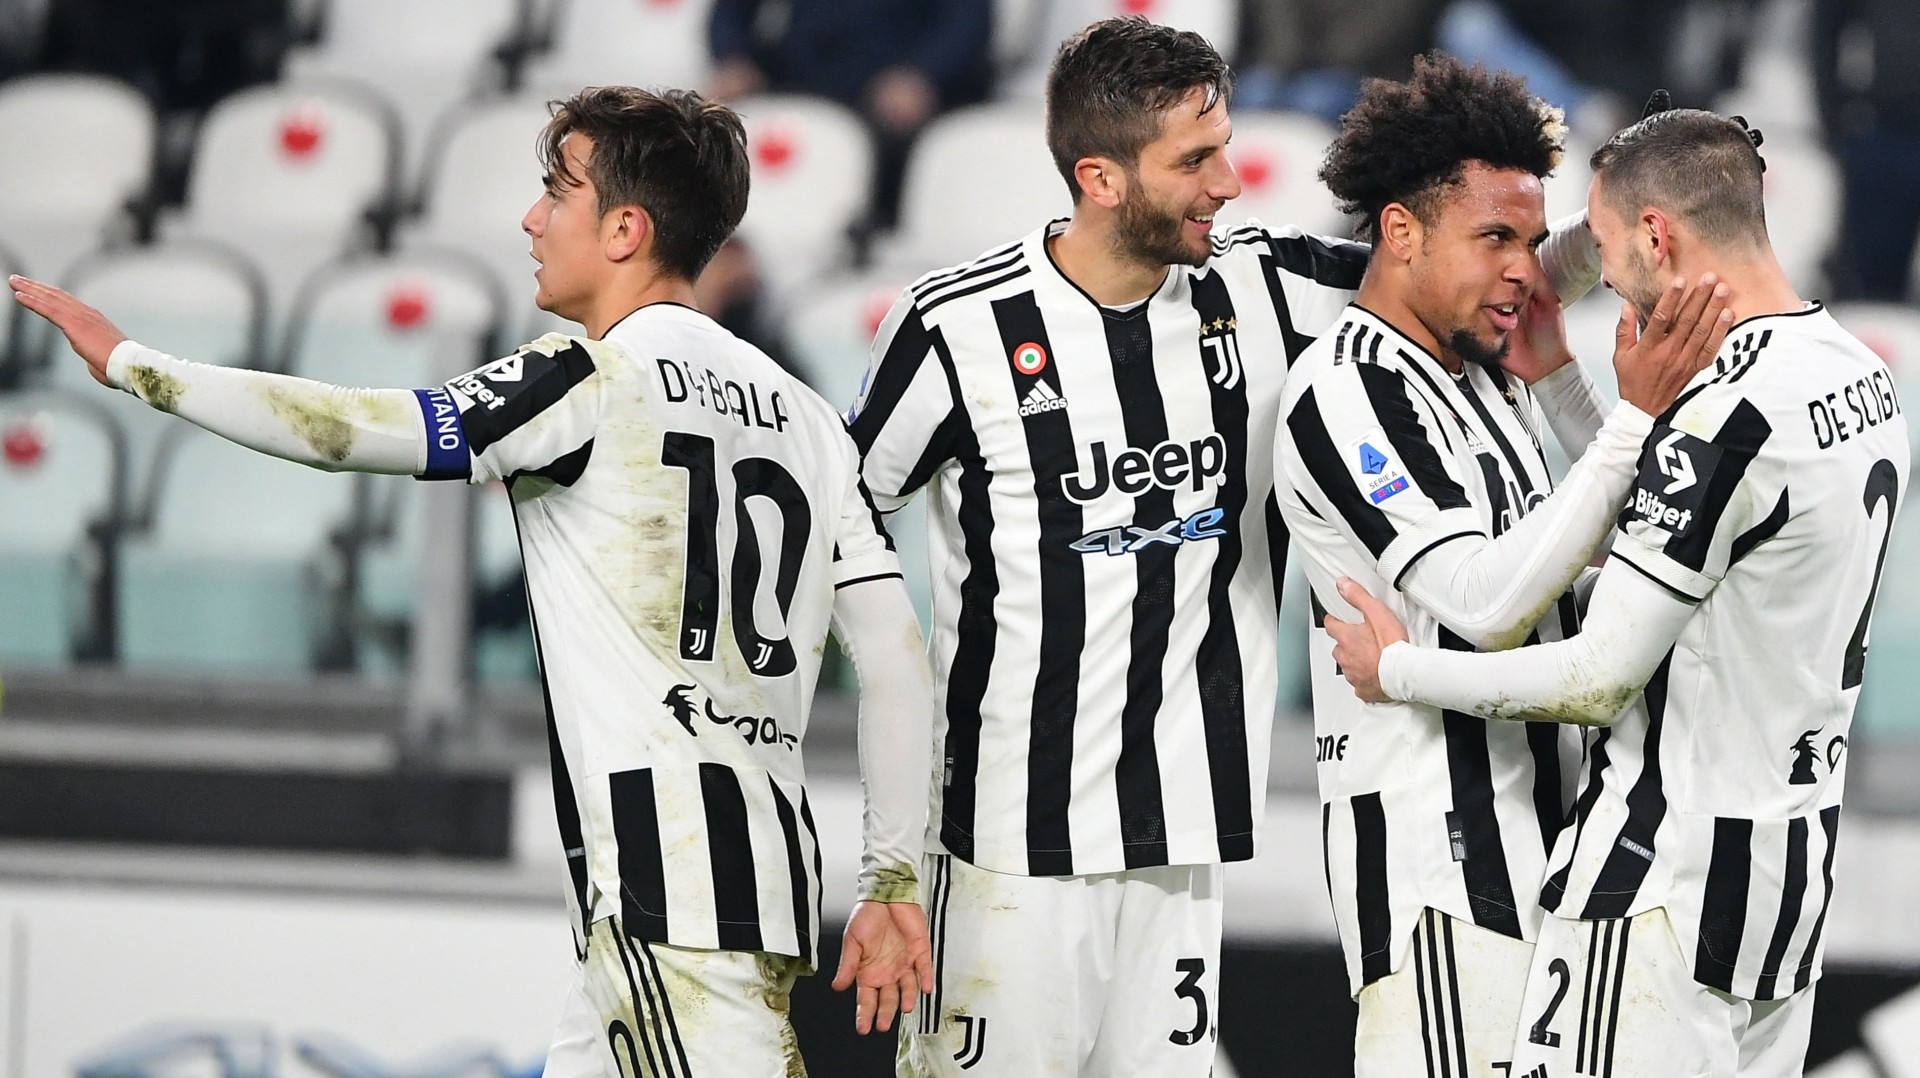 vs. Juventus, en vivo online: dónde ver por la Serie A en streaming, internet y TV | Goal.com Espana